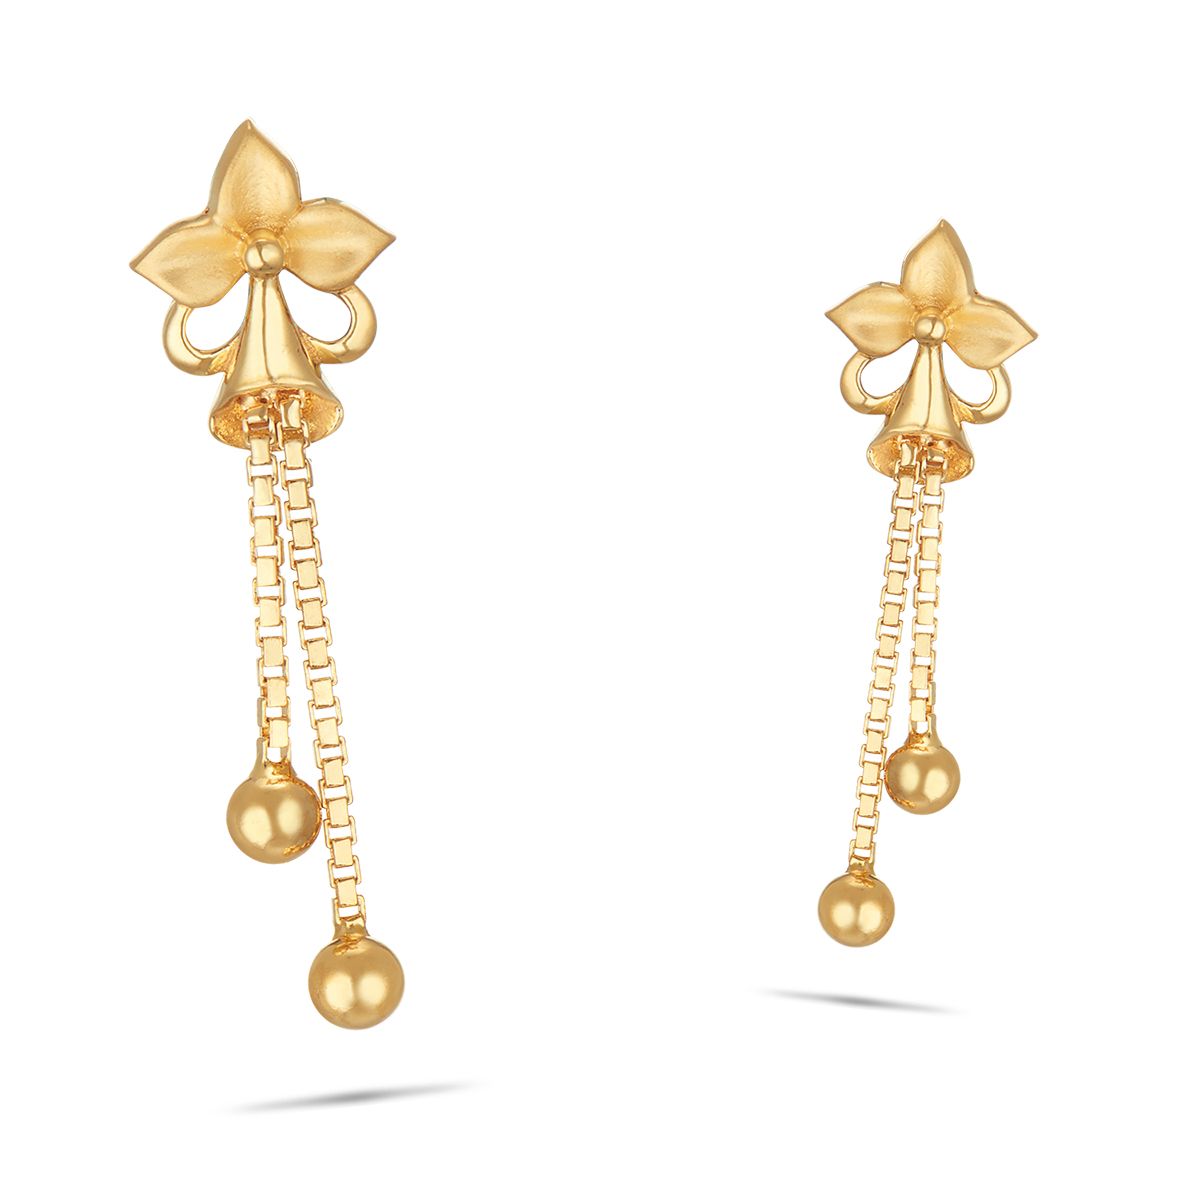 Gold earrings for girls stylish latest design earrings